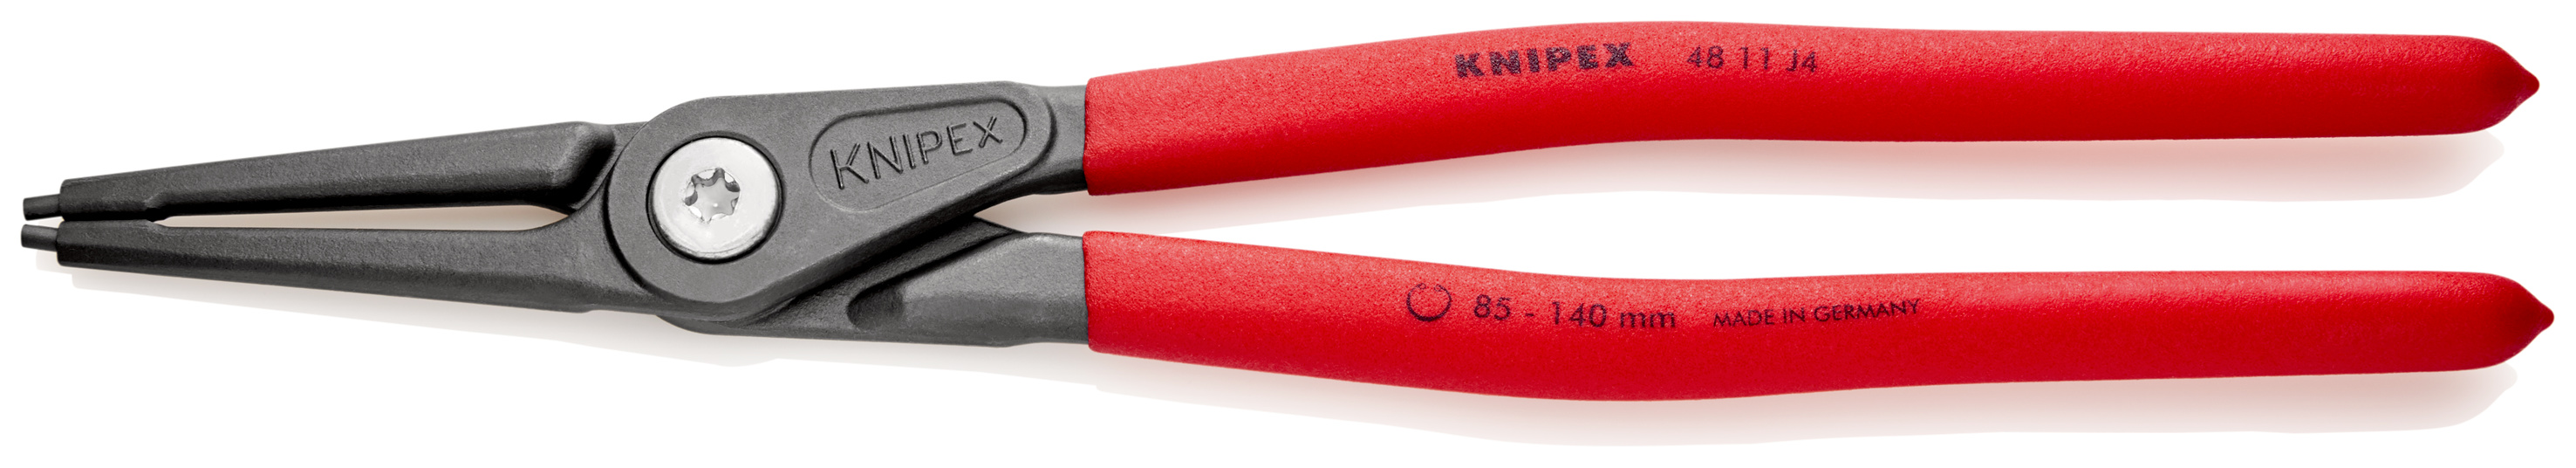 精密スナップリングプライヤー 穴用スナップリング | Knipex